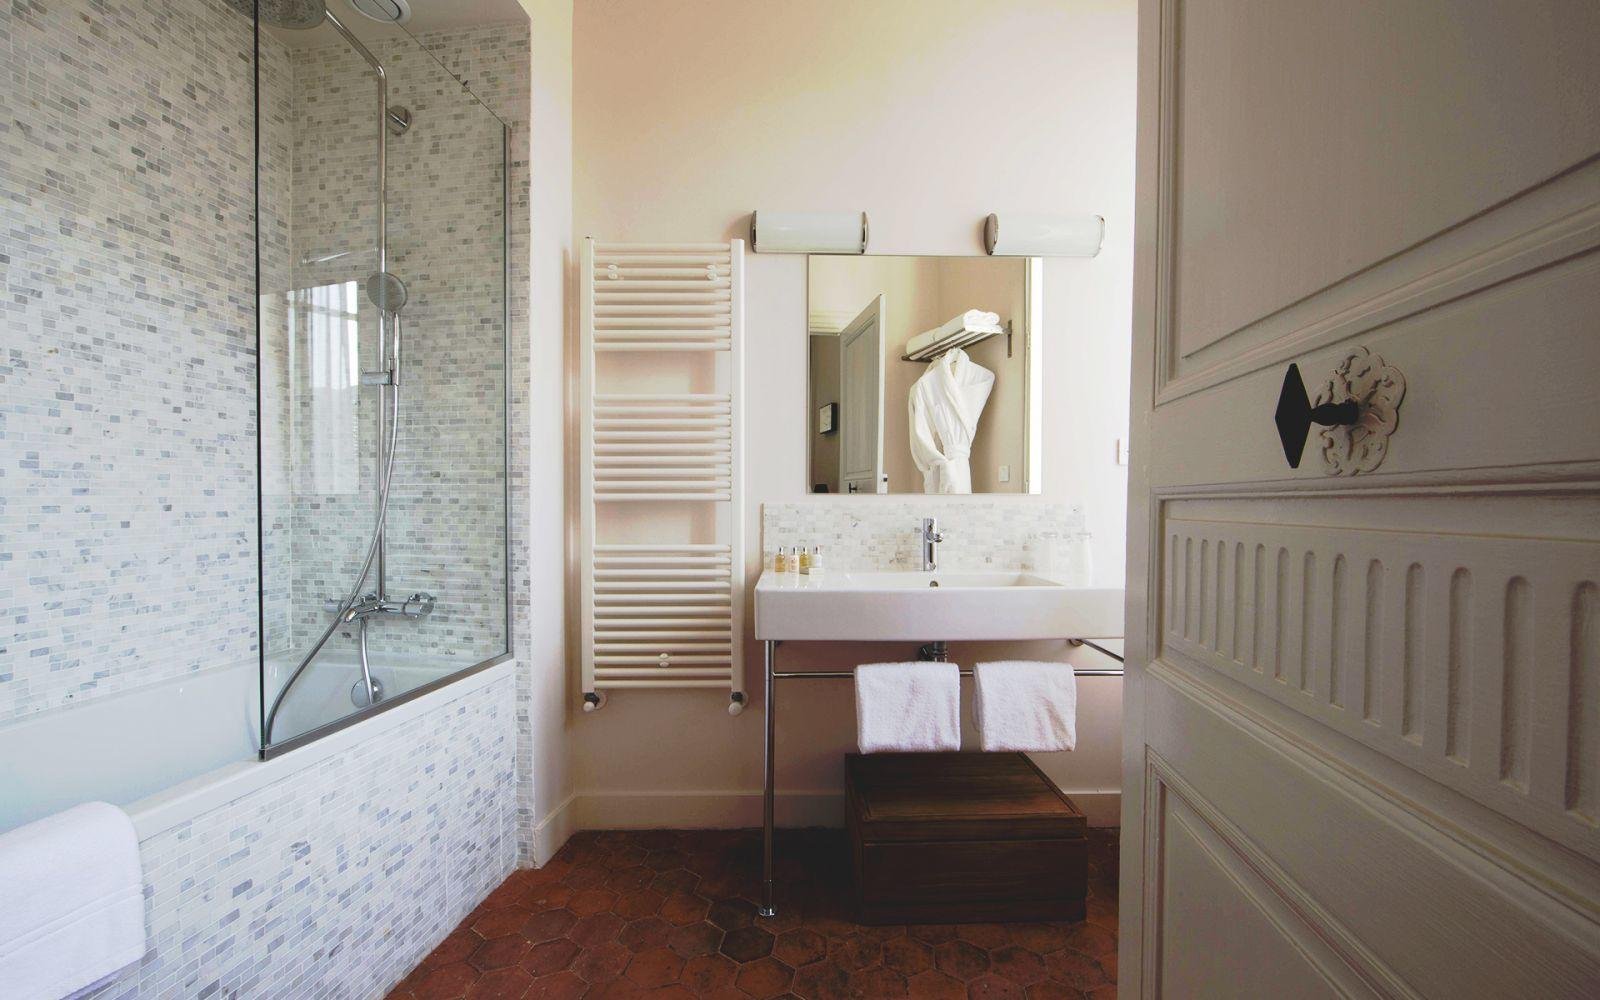 Hôtel de la Villeon | La Villeon suite | Bathroom